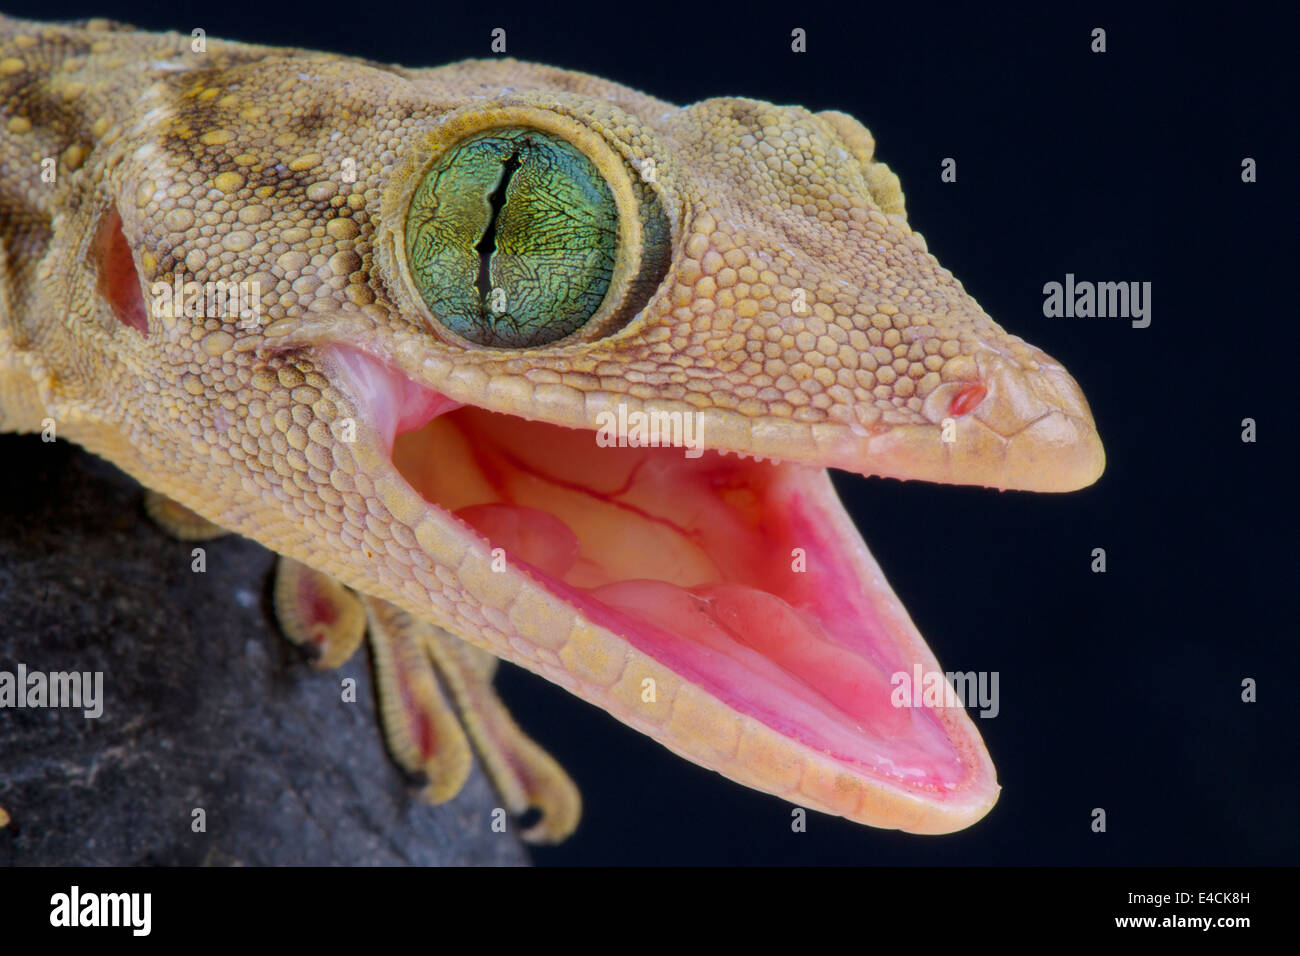 Green eyed gecko / Gekko smithii Stock Photo